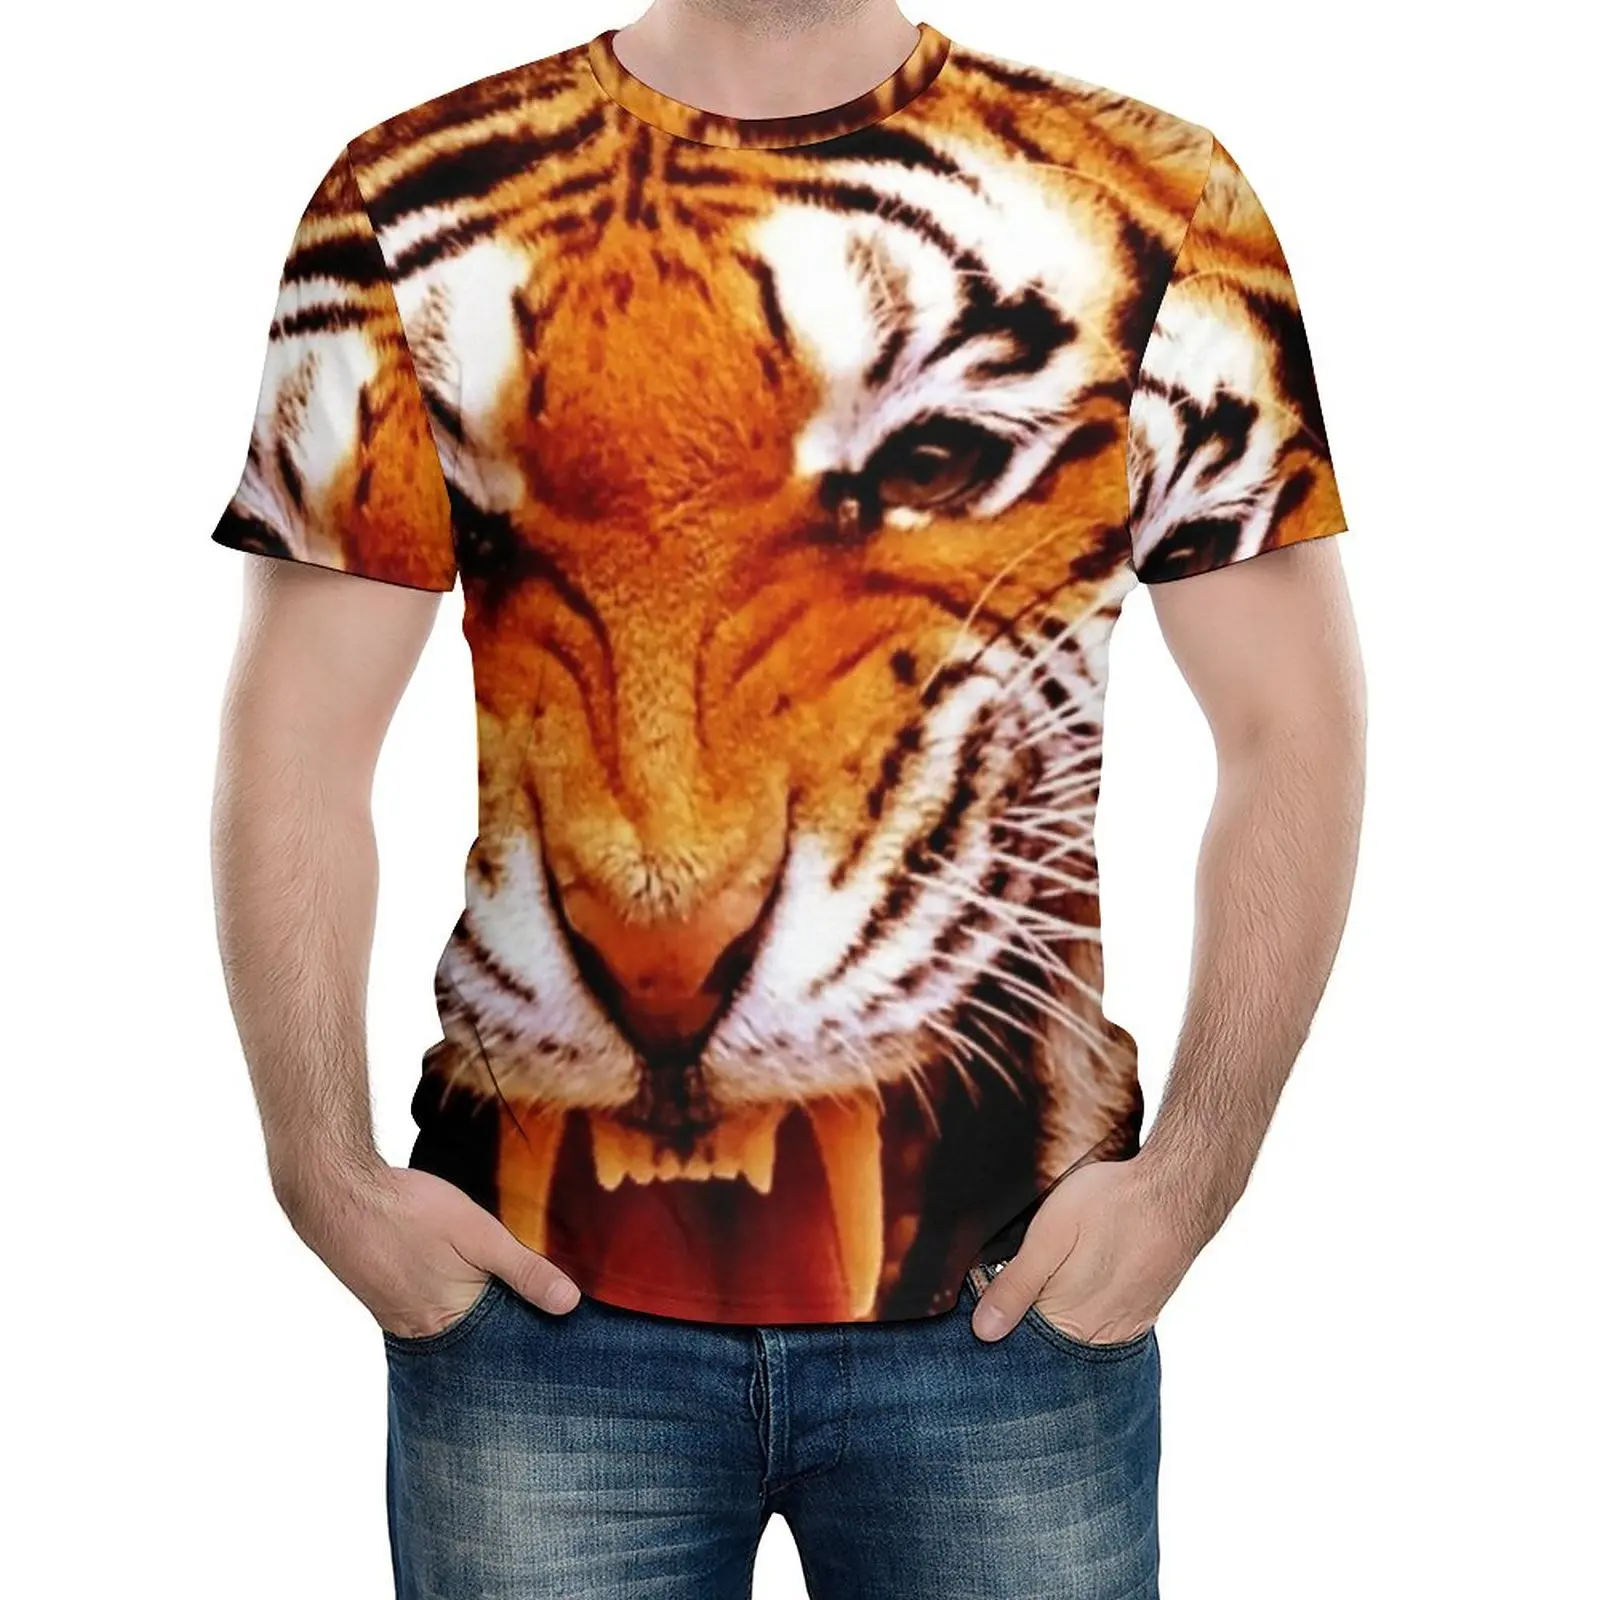 

Футболка в стиле Харадзюку с принтом тигра и пламени, недорогая оригинальная рубашка с коротким рукавом, Топ в стиле эмо, большие размеры